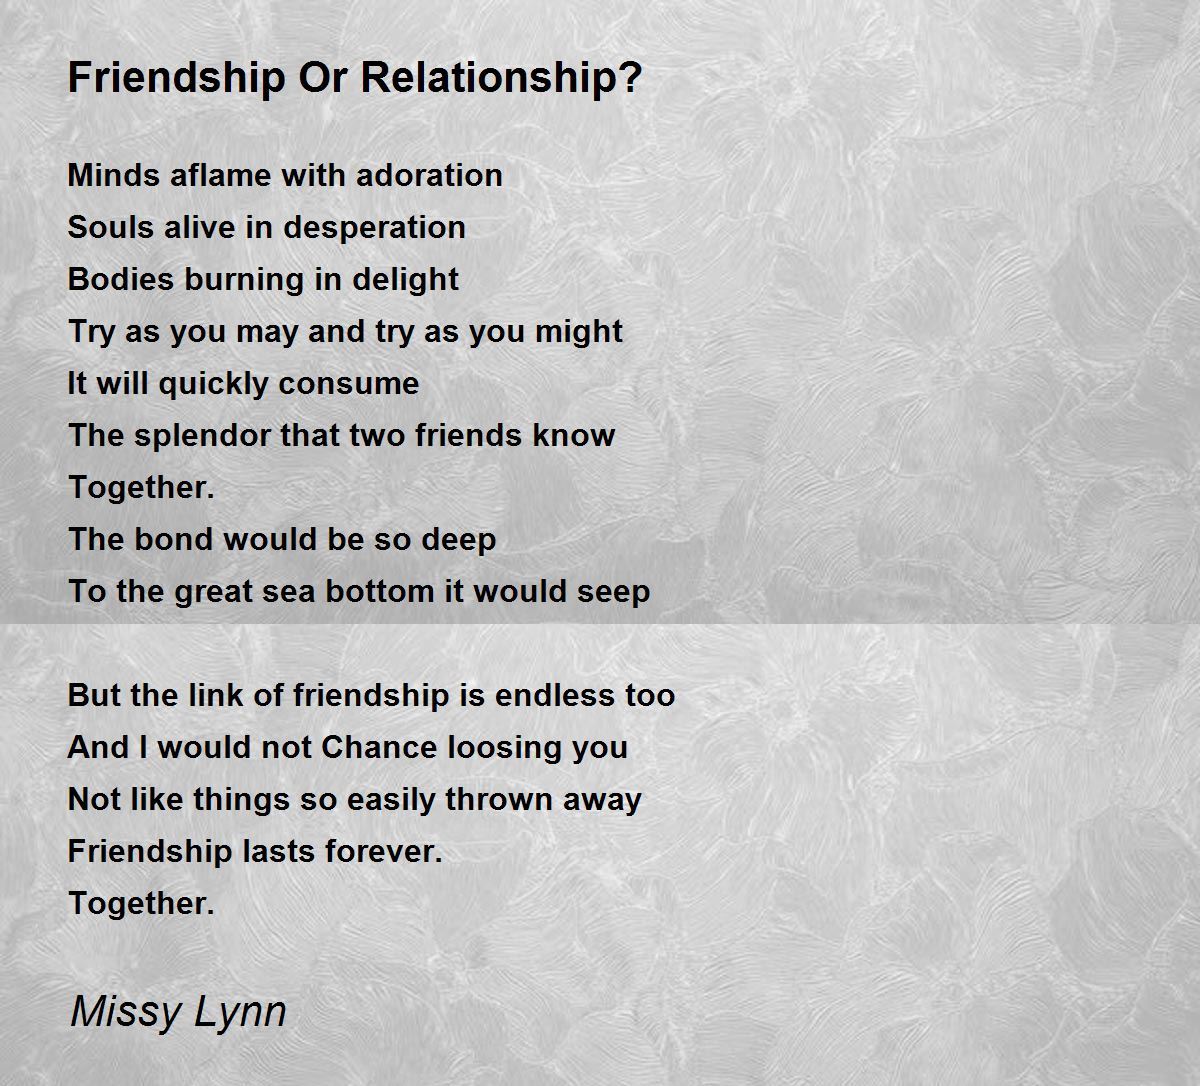 Friendship Or Relationship? - Friendship Or Relationship? Poem by Missy ...